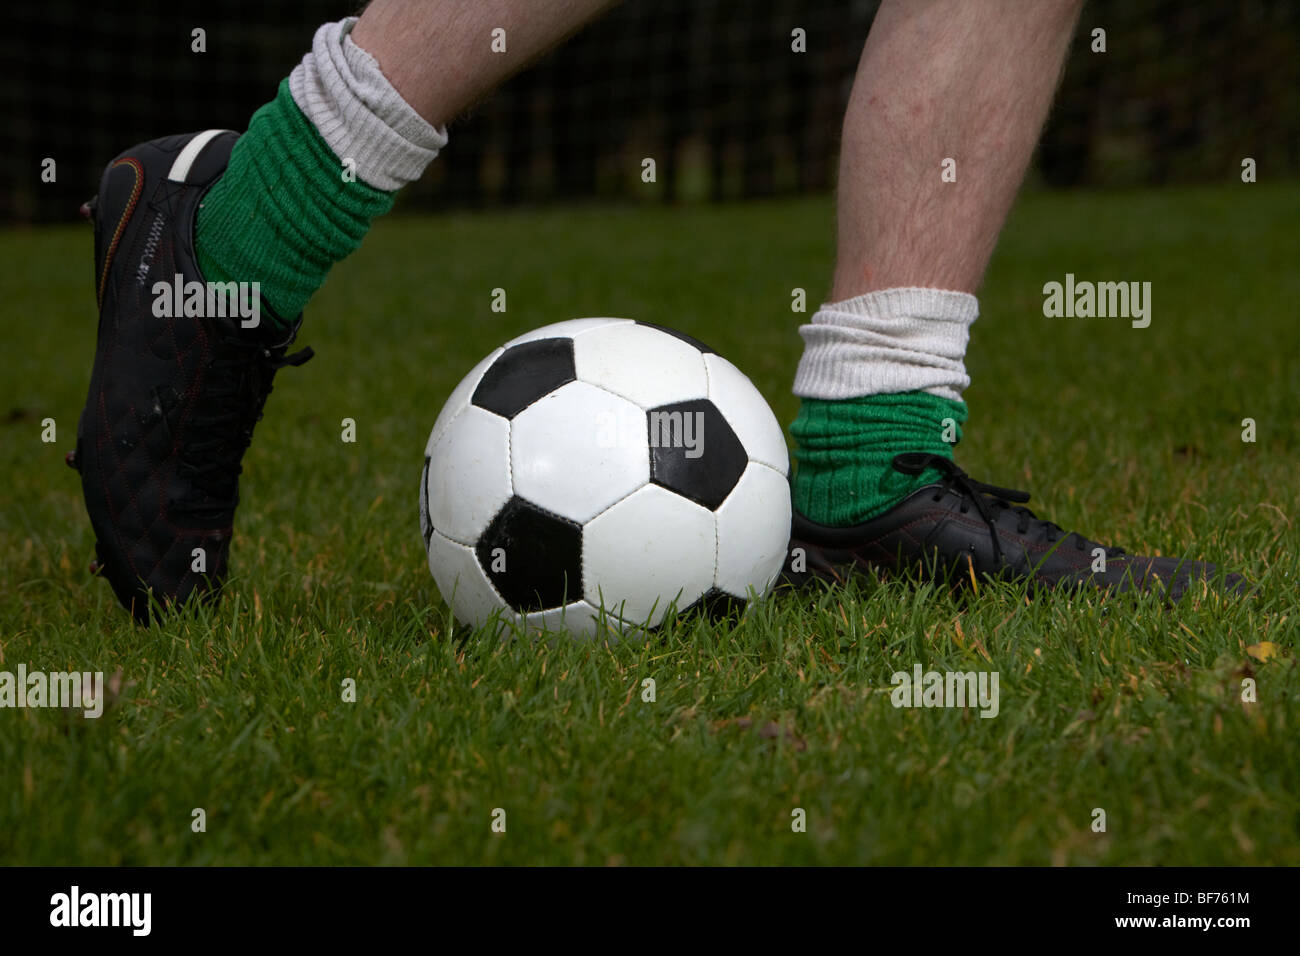 Soccer Football player sposta in avanti a calci una sfera pratica modello rilasciato image Foto Stock